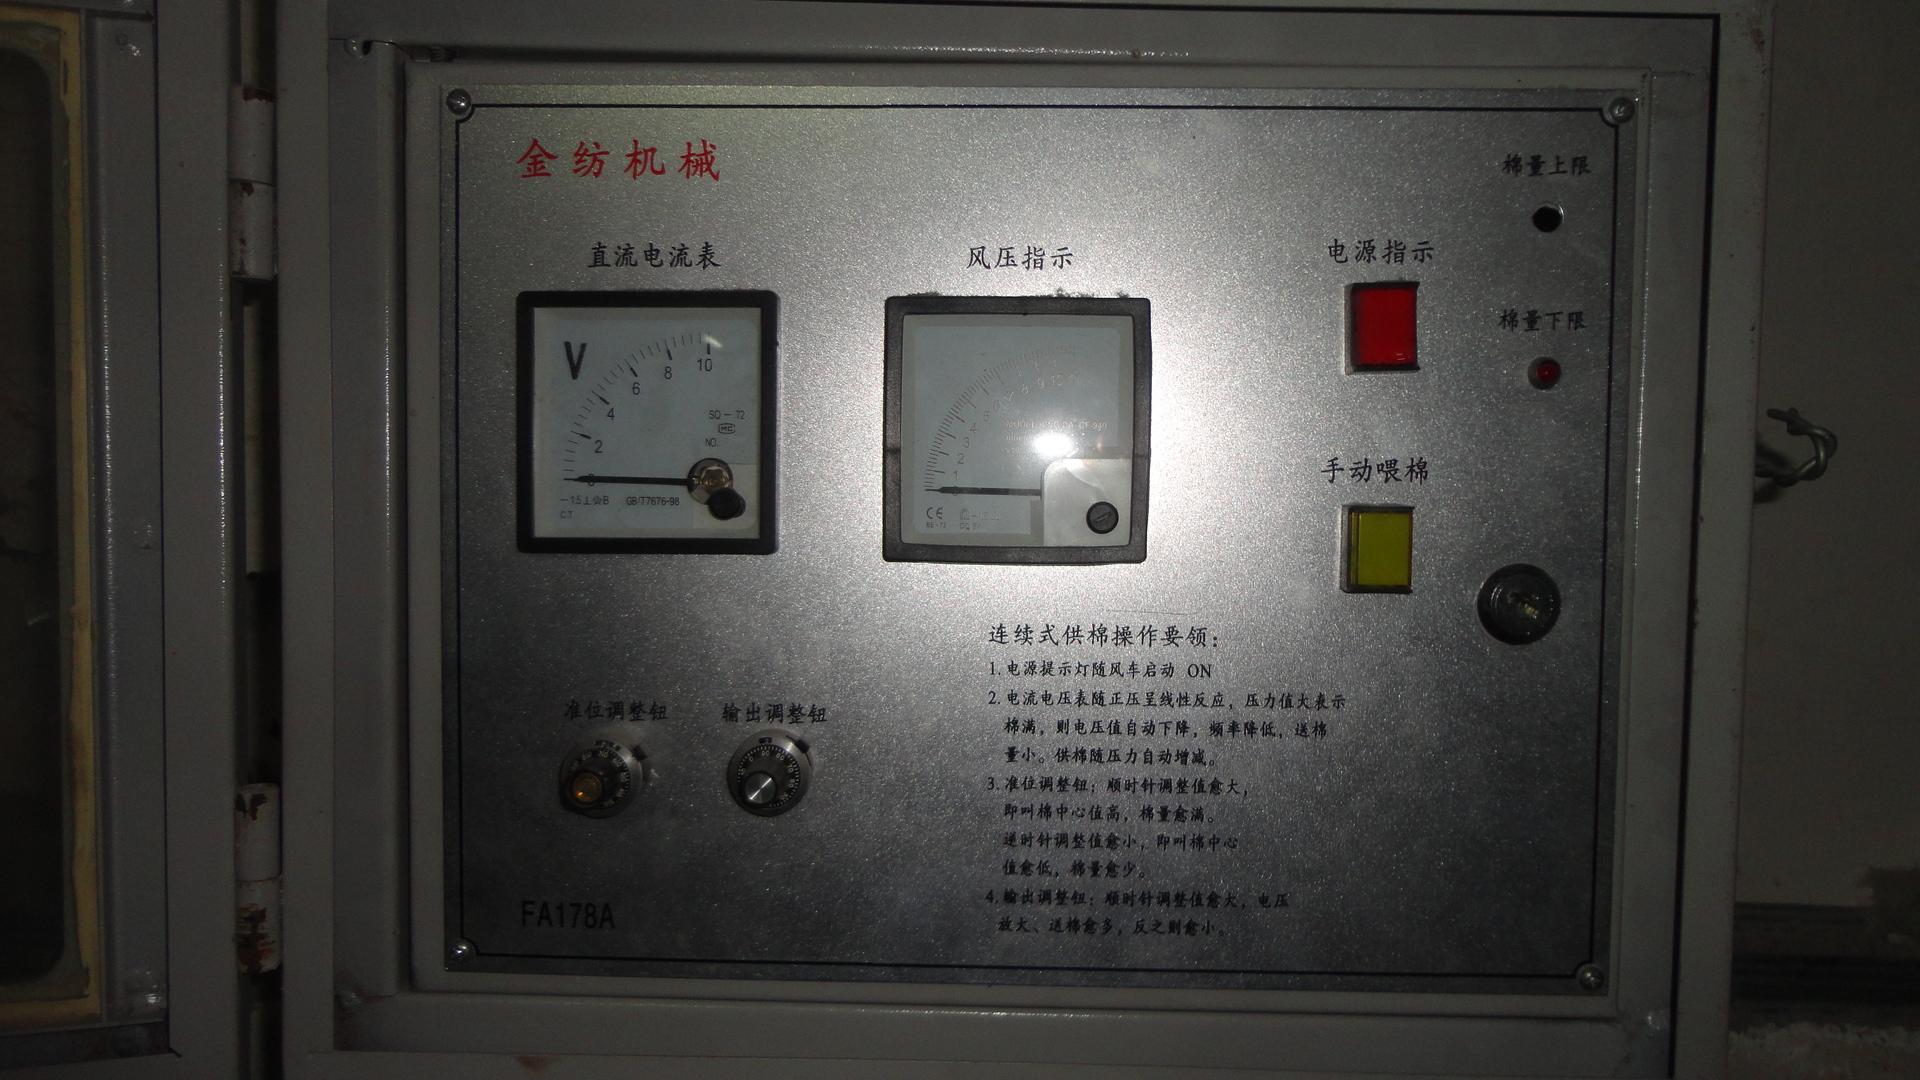 FA178A型清梳联喂棉箱（电器控制系统）